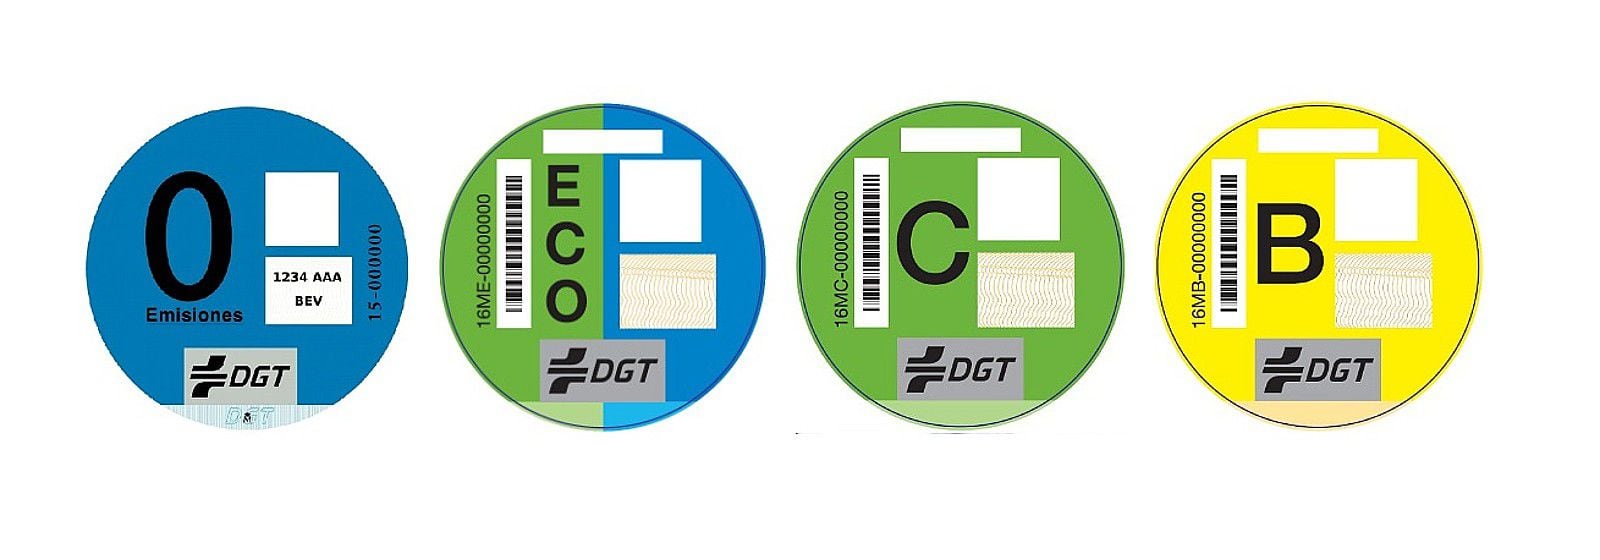 Etiquetas ambientales de la DGT. (Dirección General de Tráfico).